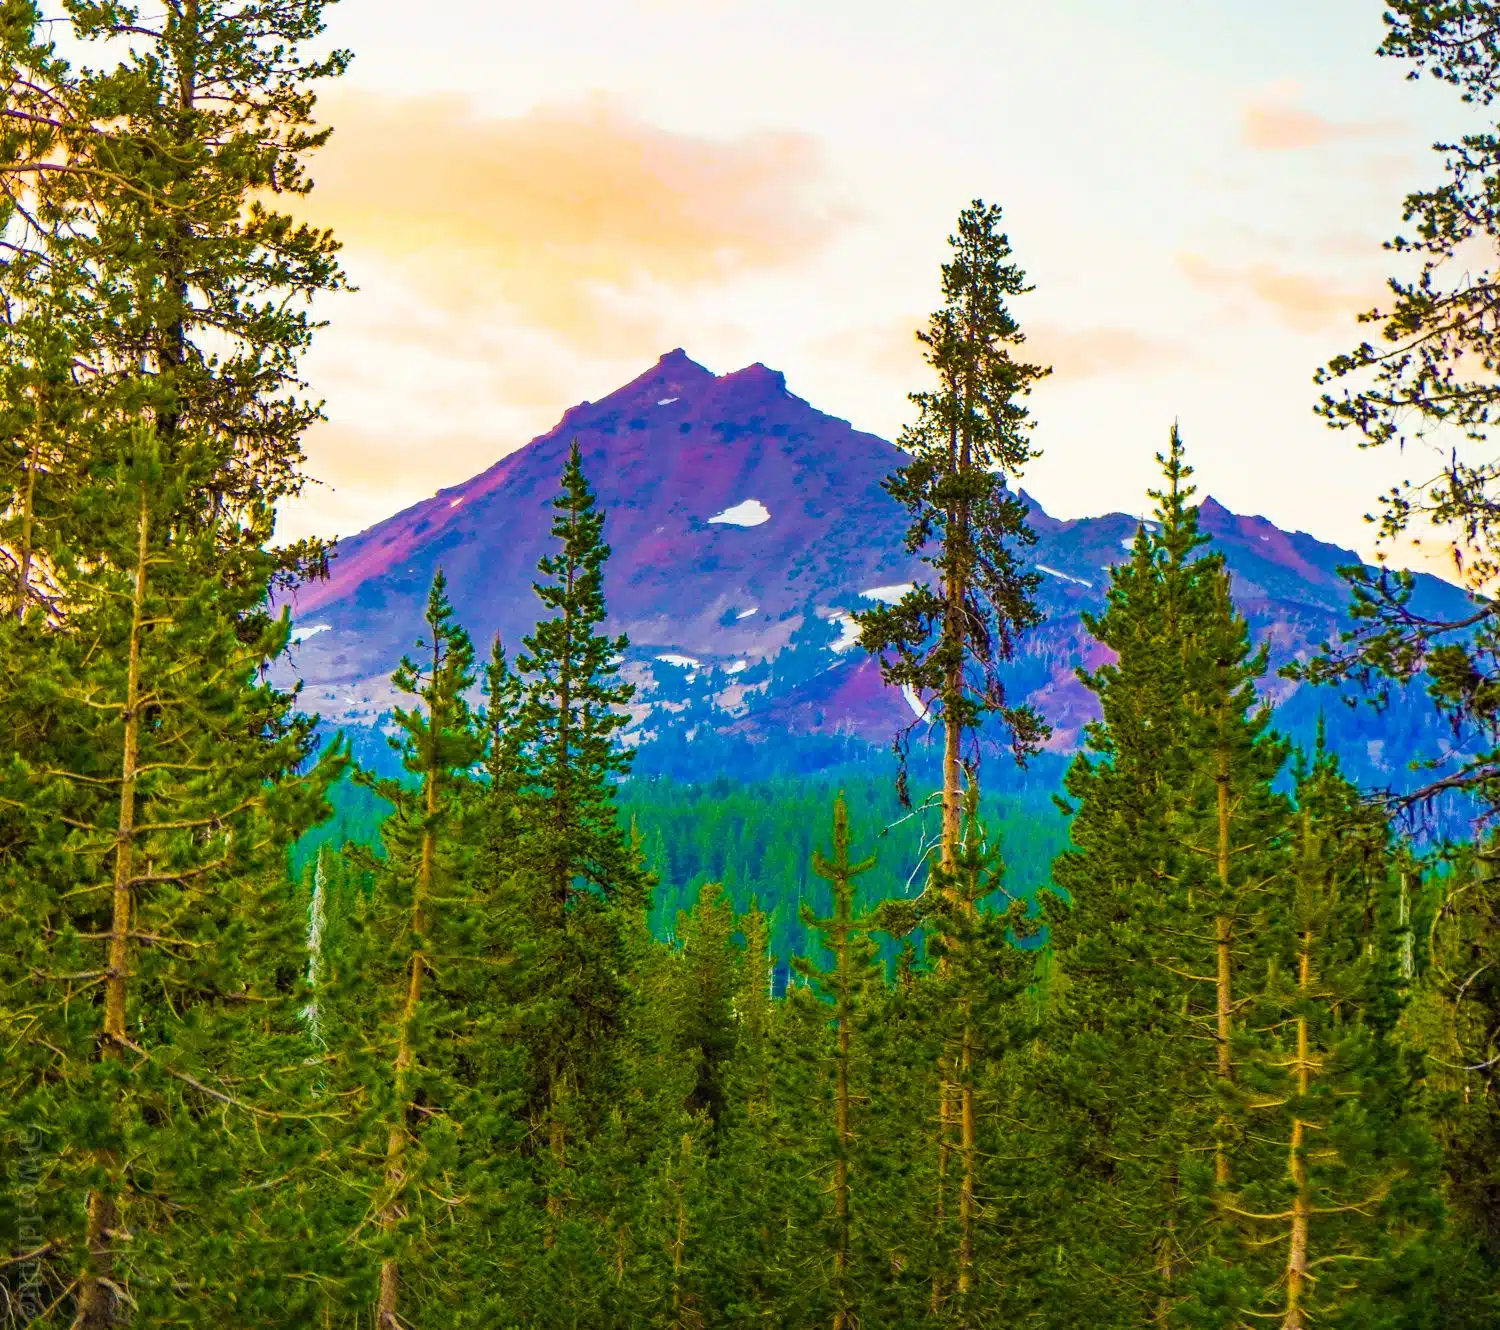 Oregon Mountains peeking up to say hello.